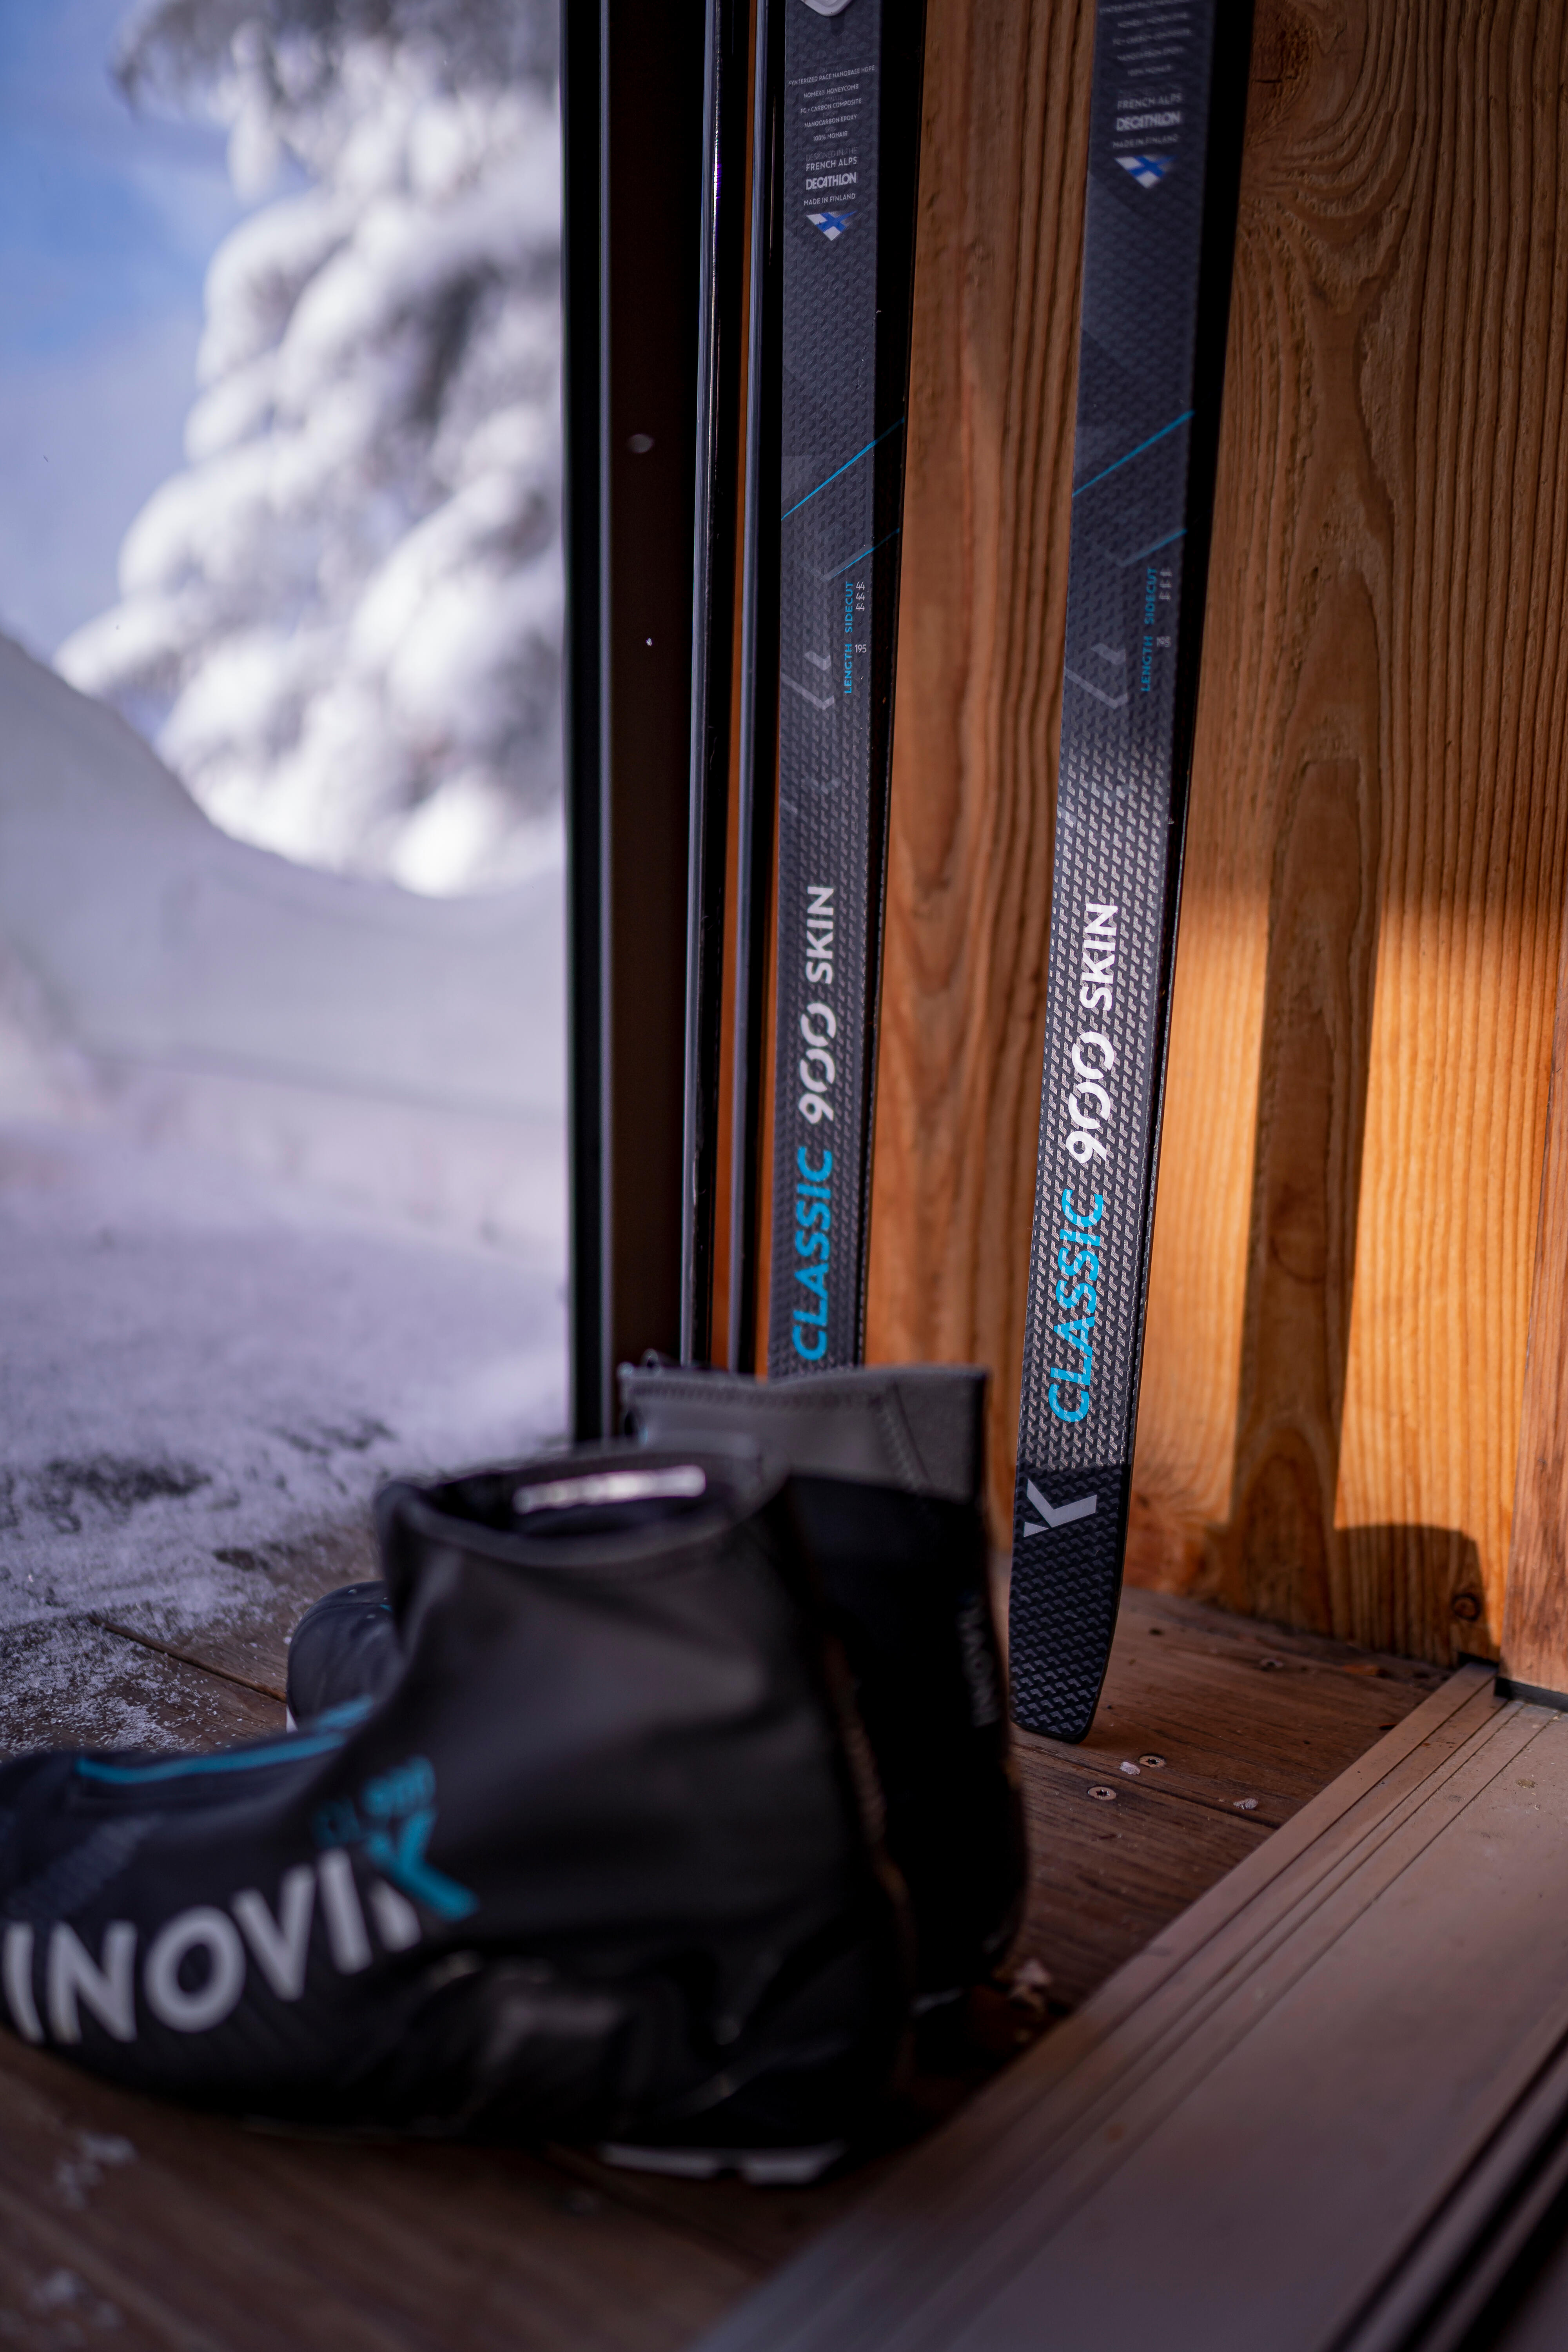 Bottes de ski de fond classique hommes – XC S 900 noir - INOVIK